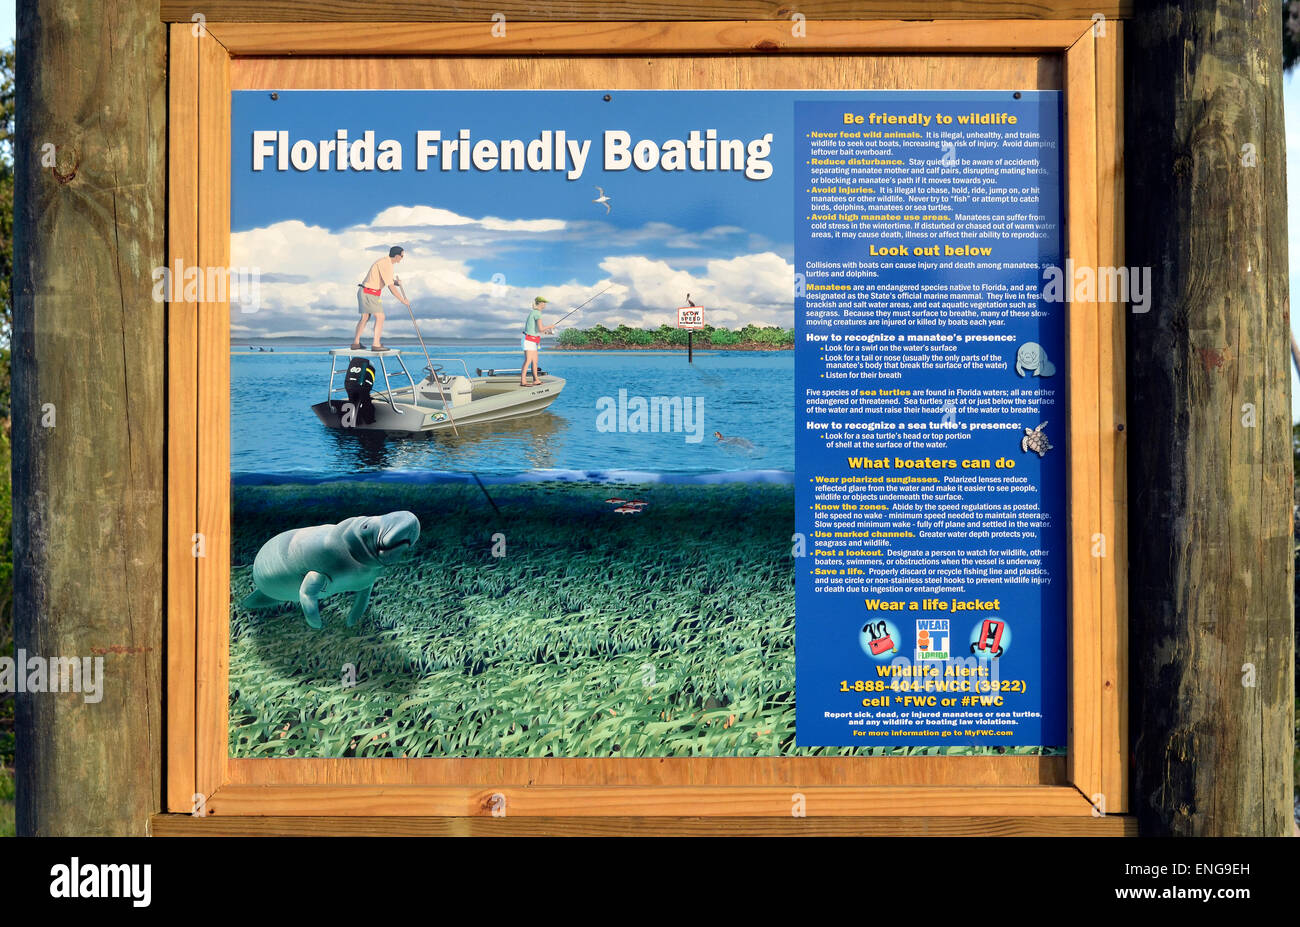 Eine illustrierte Schild an einem Boot Start Site fordert alle Bootsfahrer freundlich zu Florida Tierwelt, vor allem Seekühe, Meeresschildkröten und Delfine sein. Stockfoto